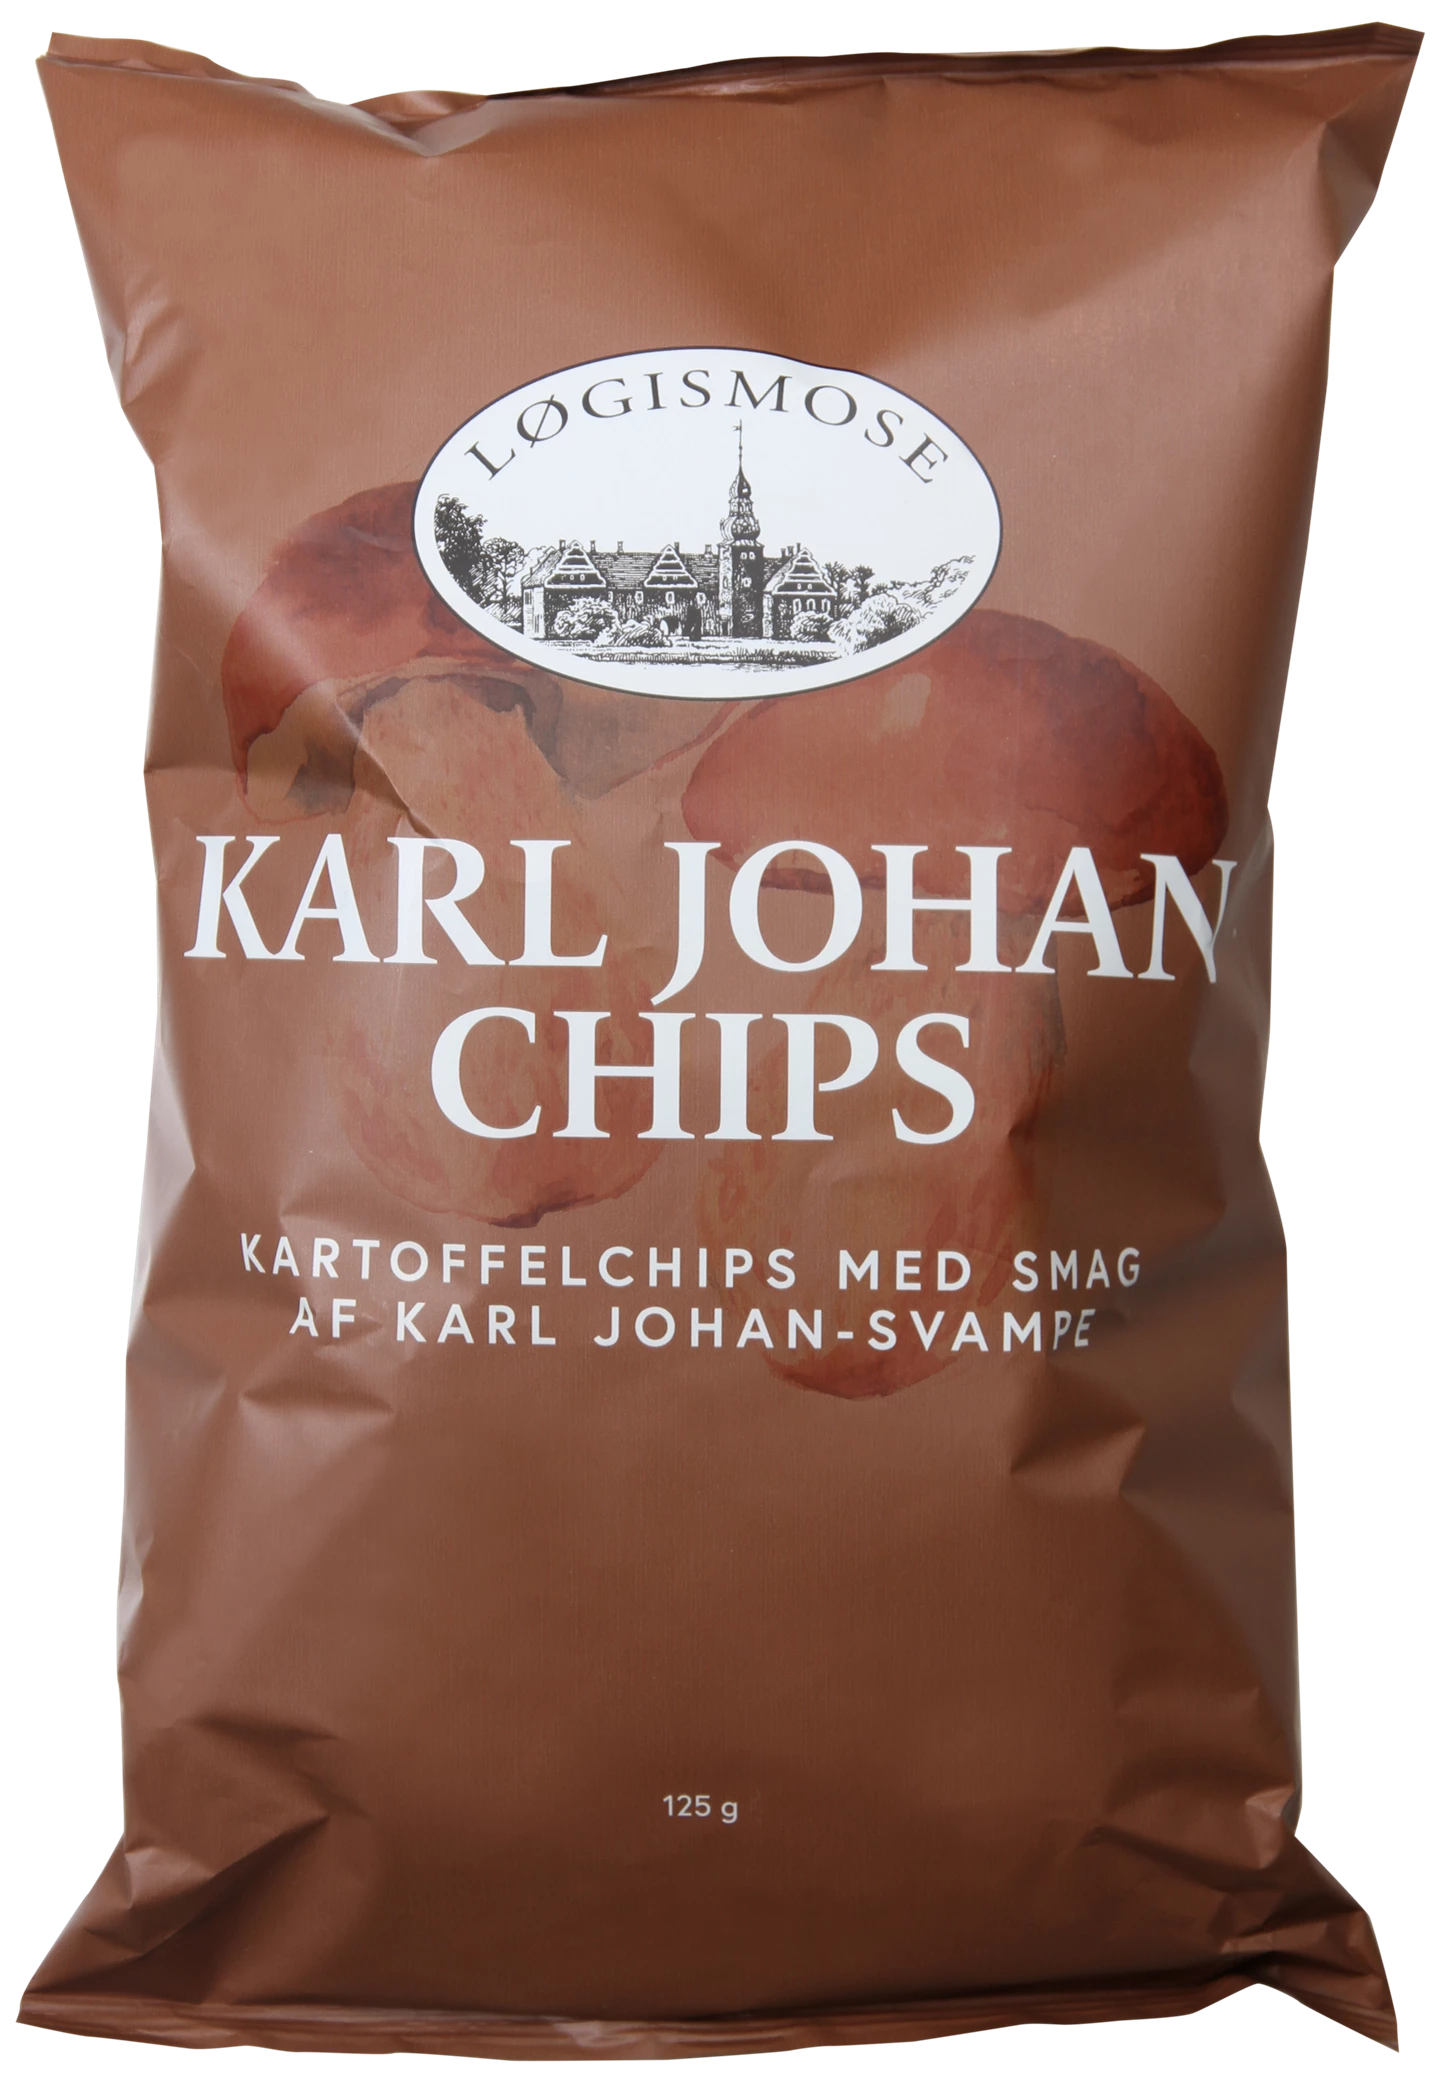 210808_loegismose_karl_johan_chips